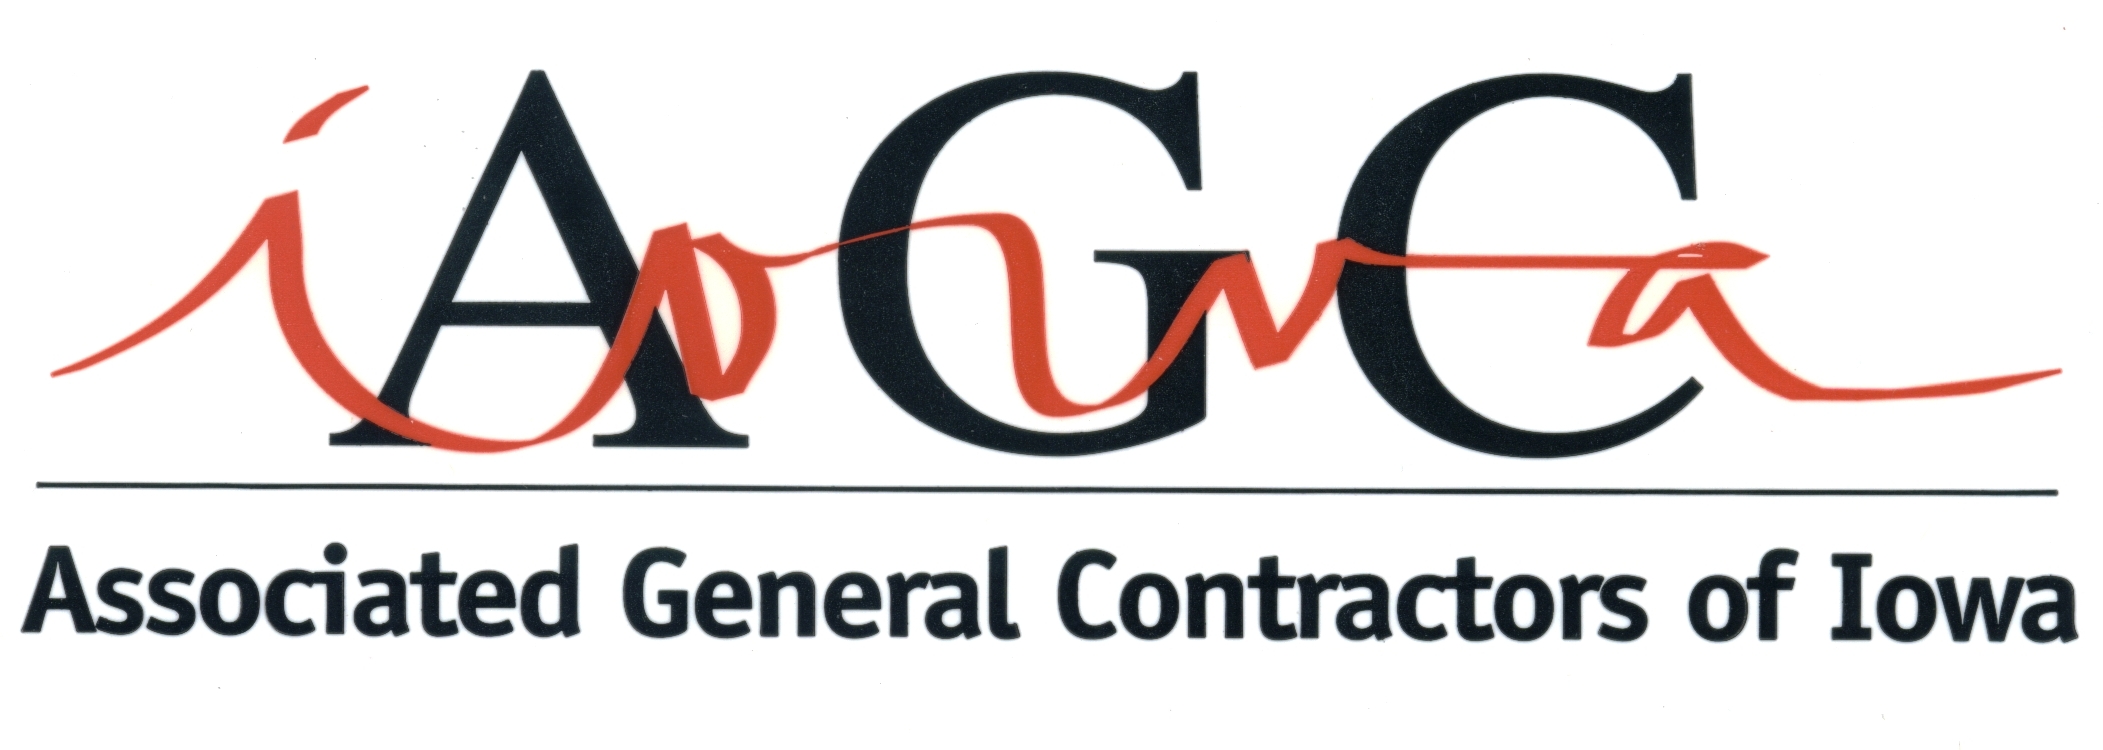 Associated General Contractors of Iowa